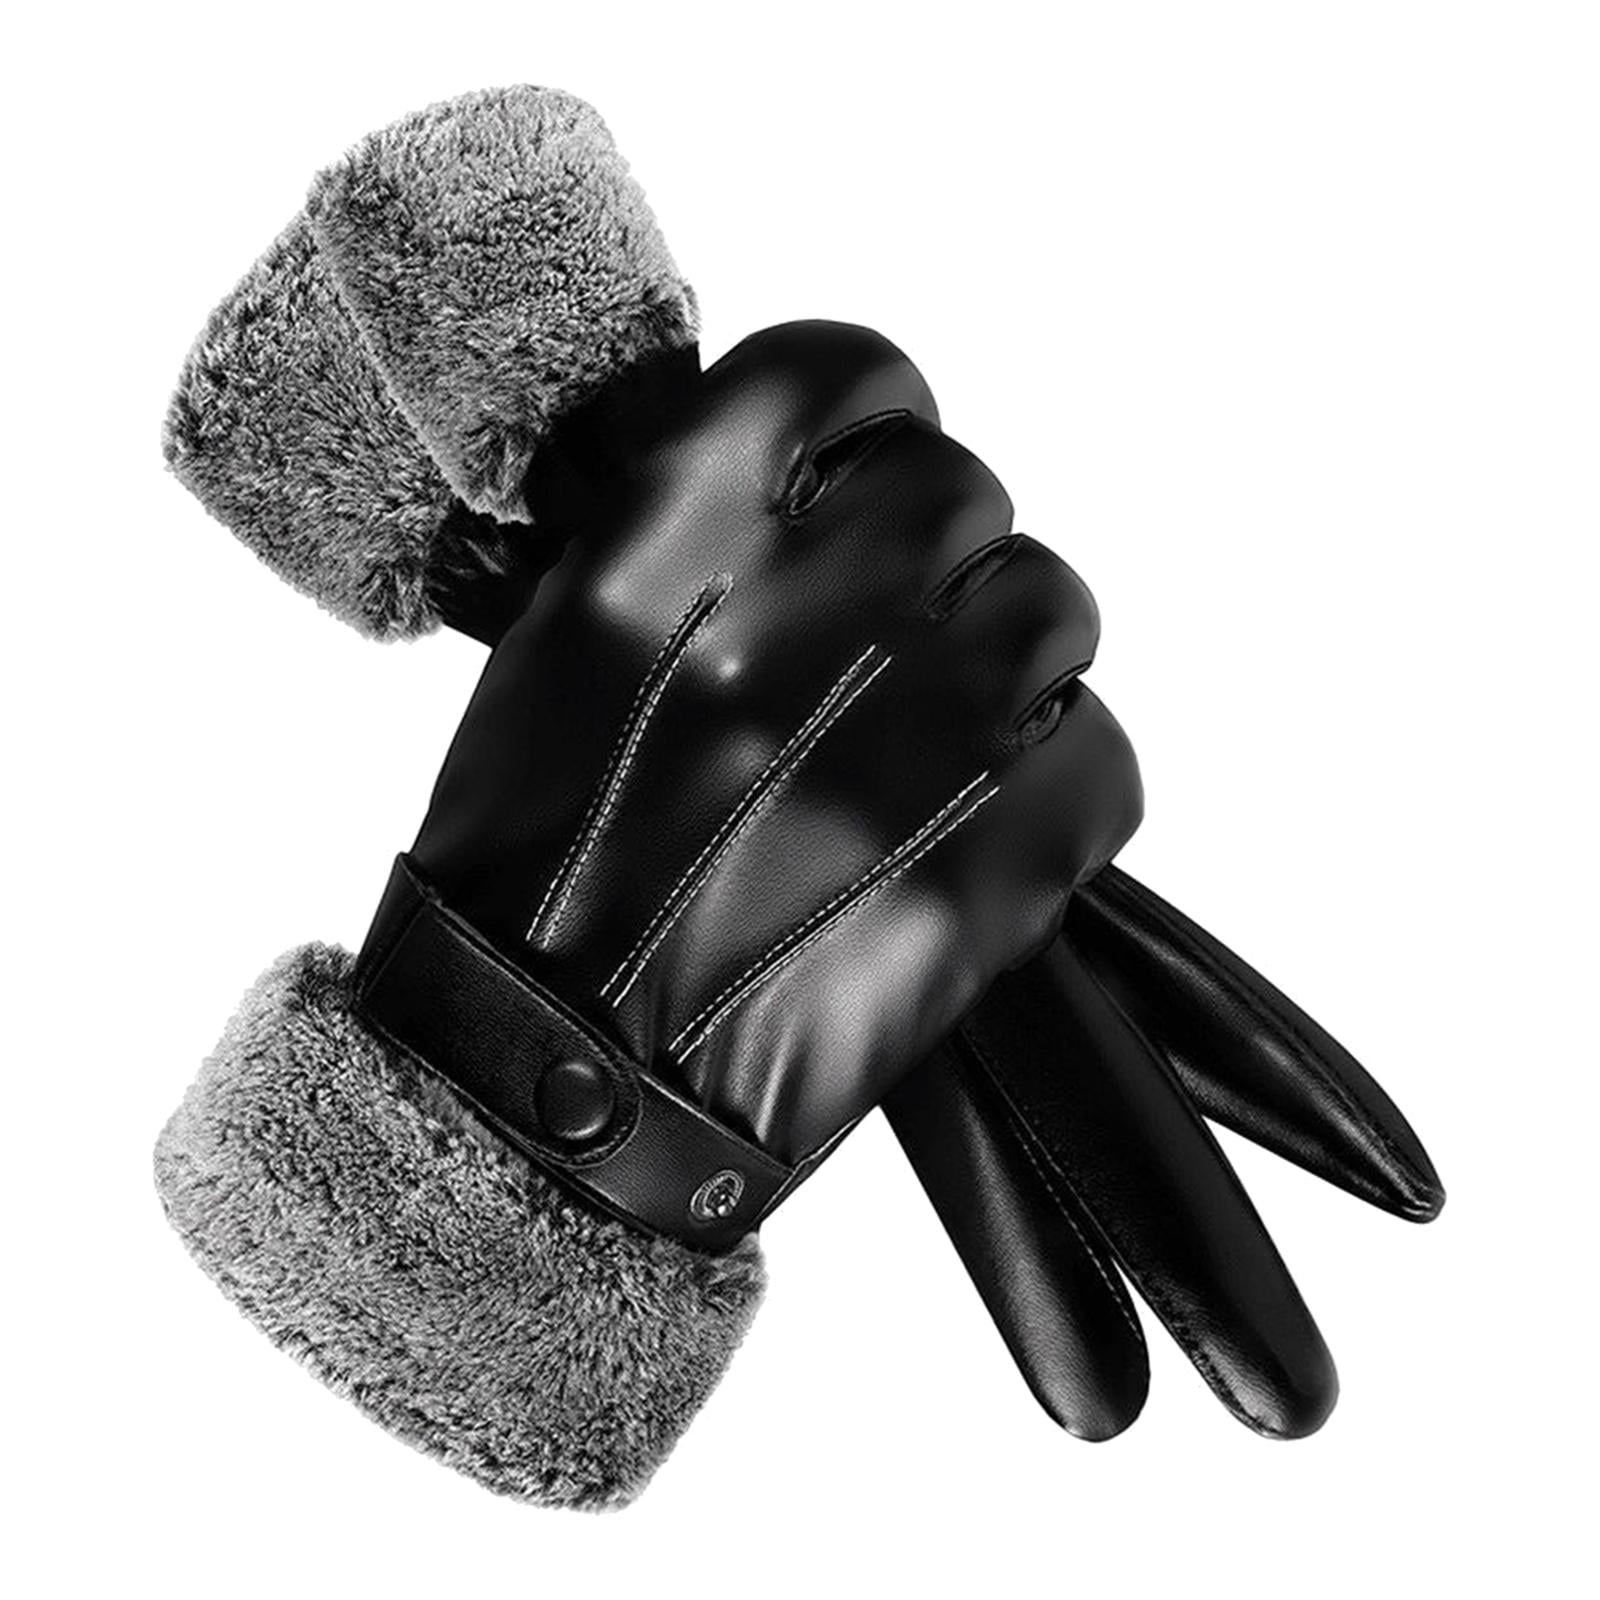 Genius Sheepskin 5 Finger Half Gloves For Men Thin From